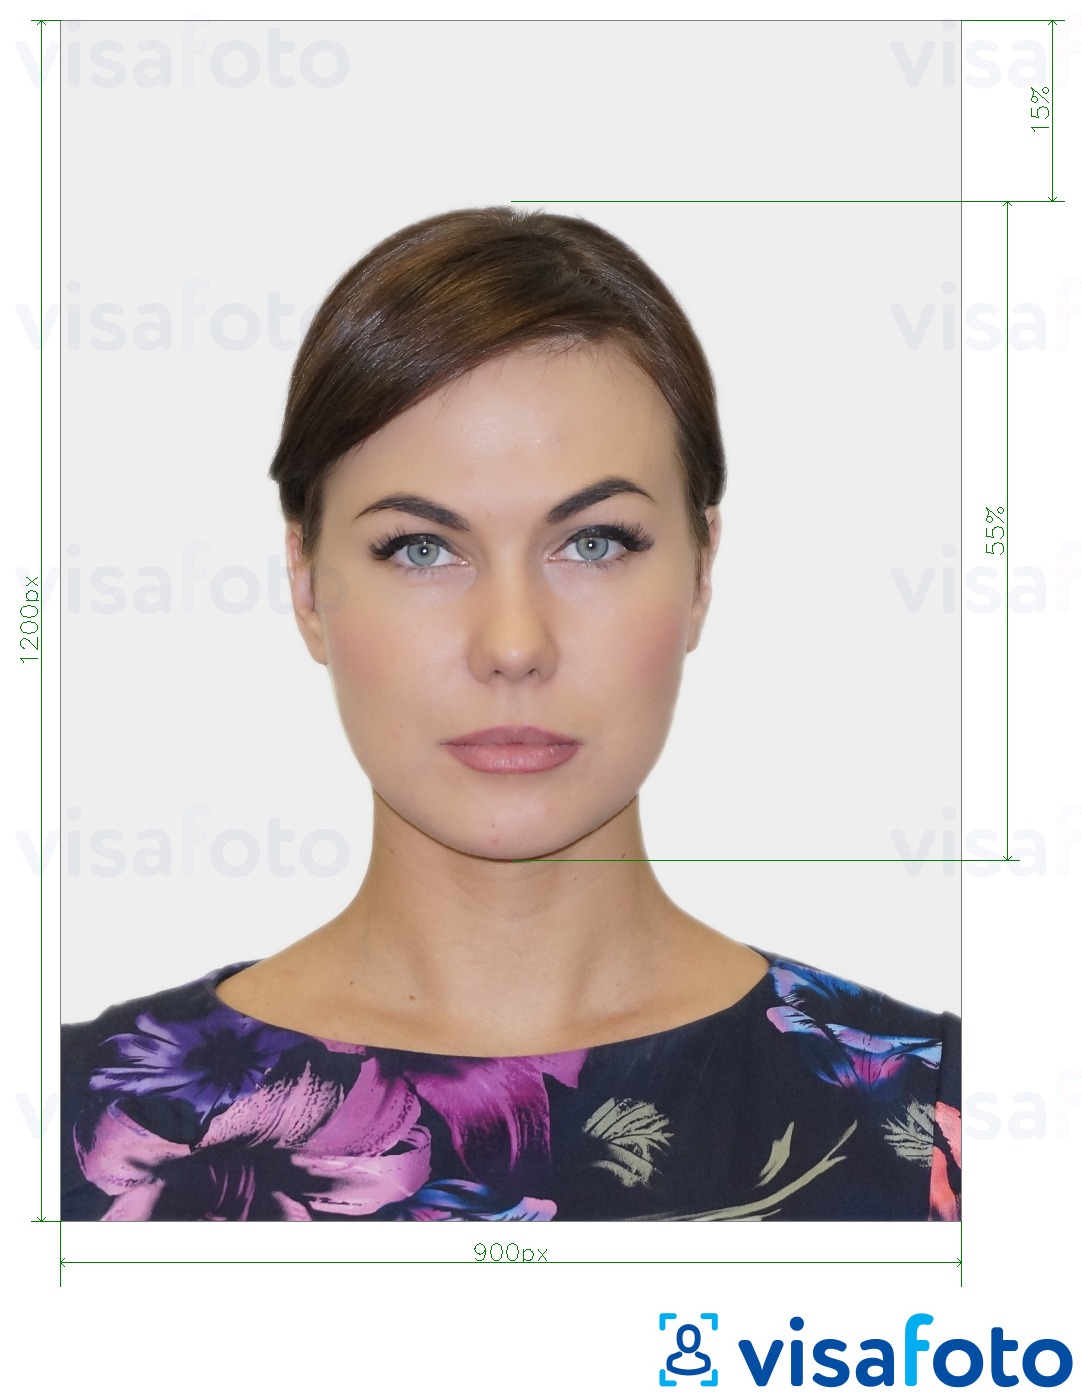 सटीक आकार विनिर्देश के साथ यूके बीएनओ पासपोर्ट के लिए तस्वीर का उदाहरण